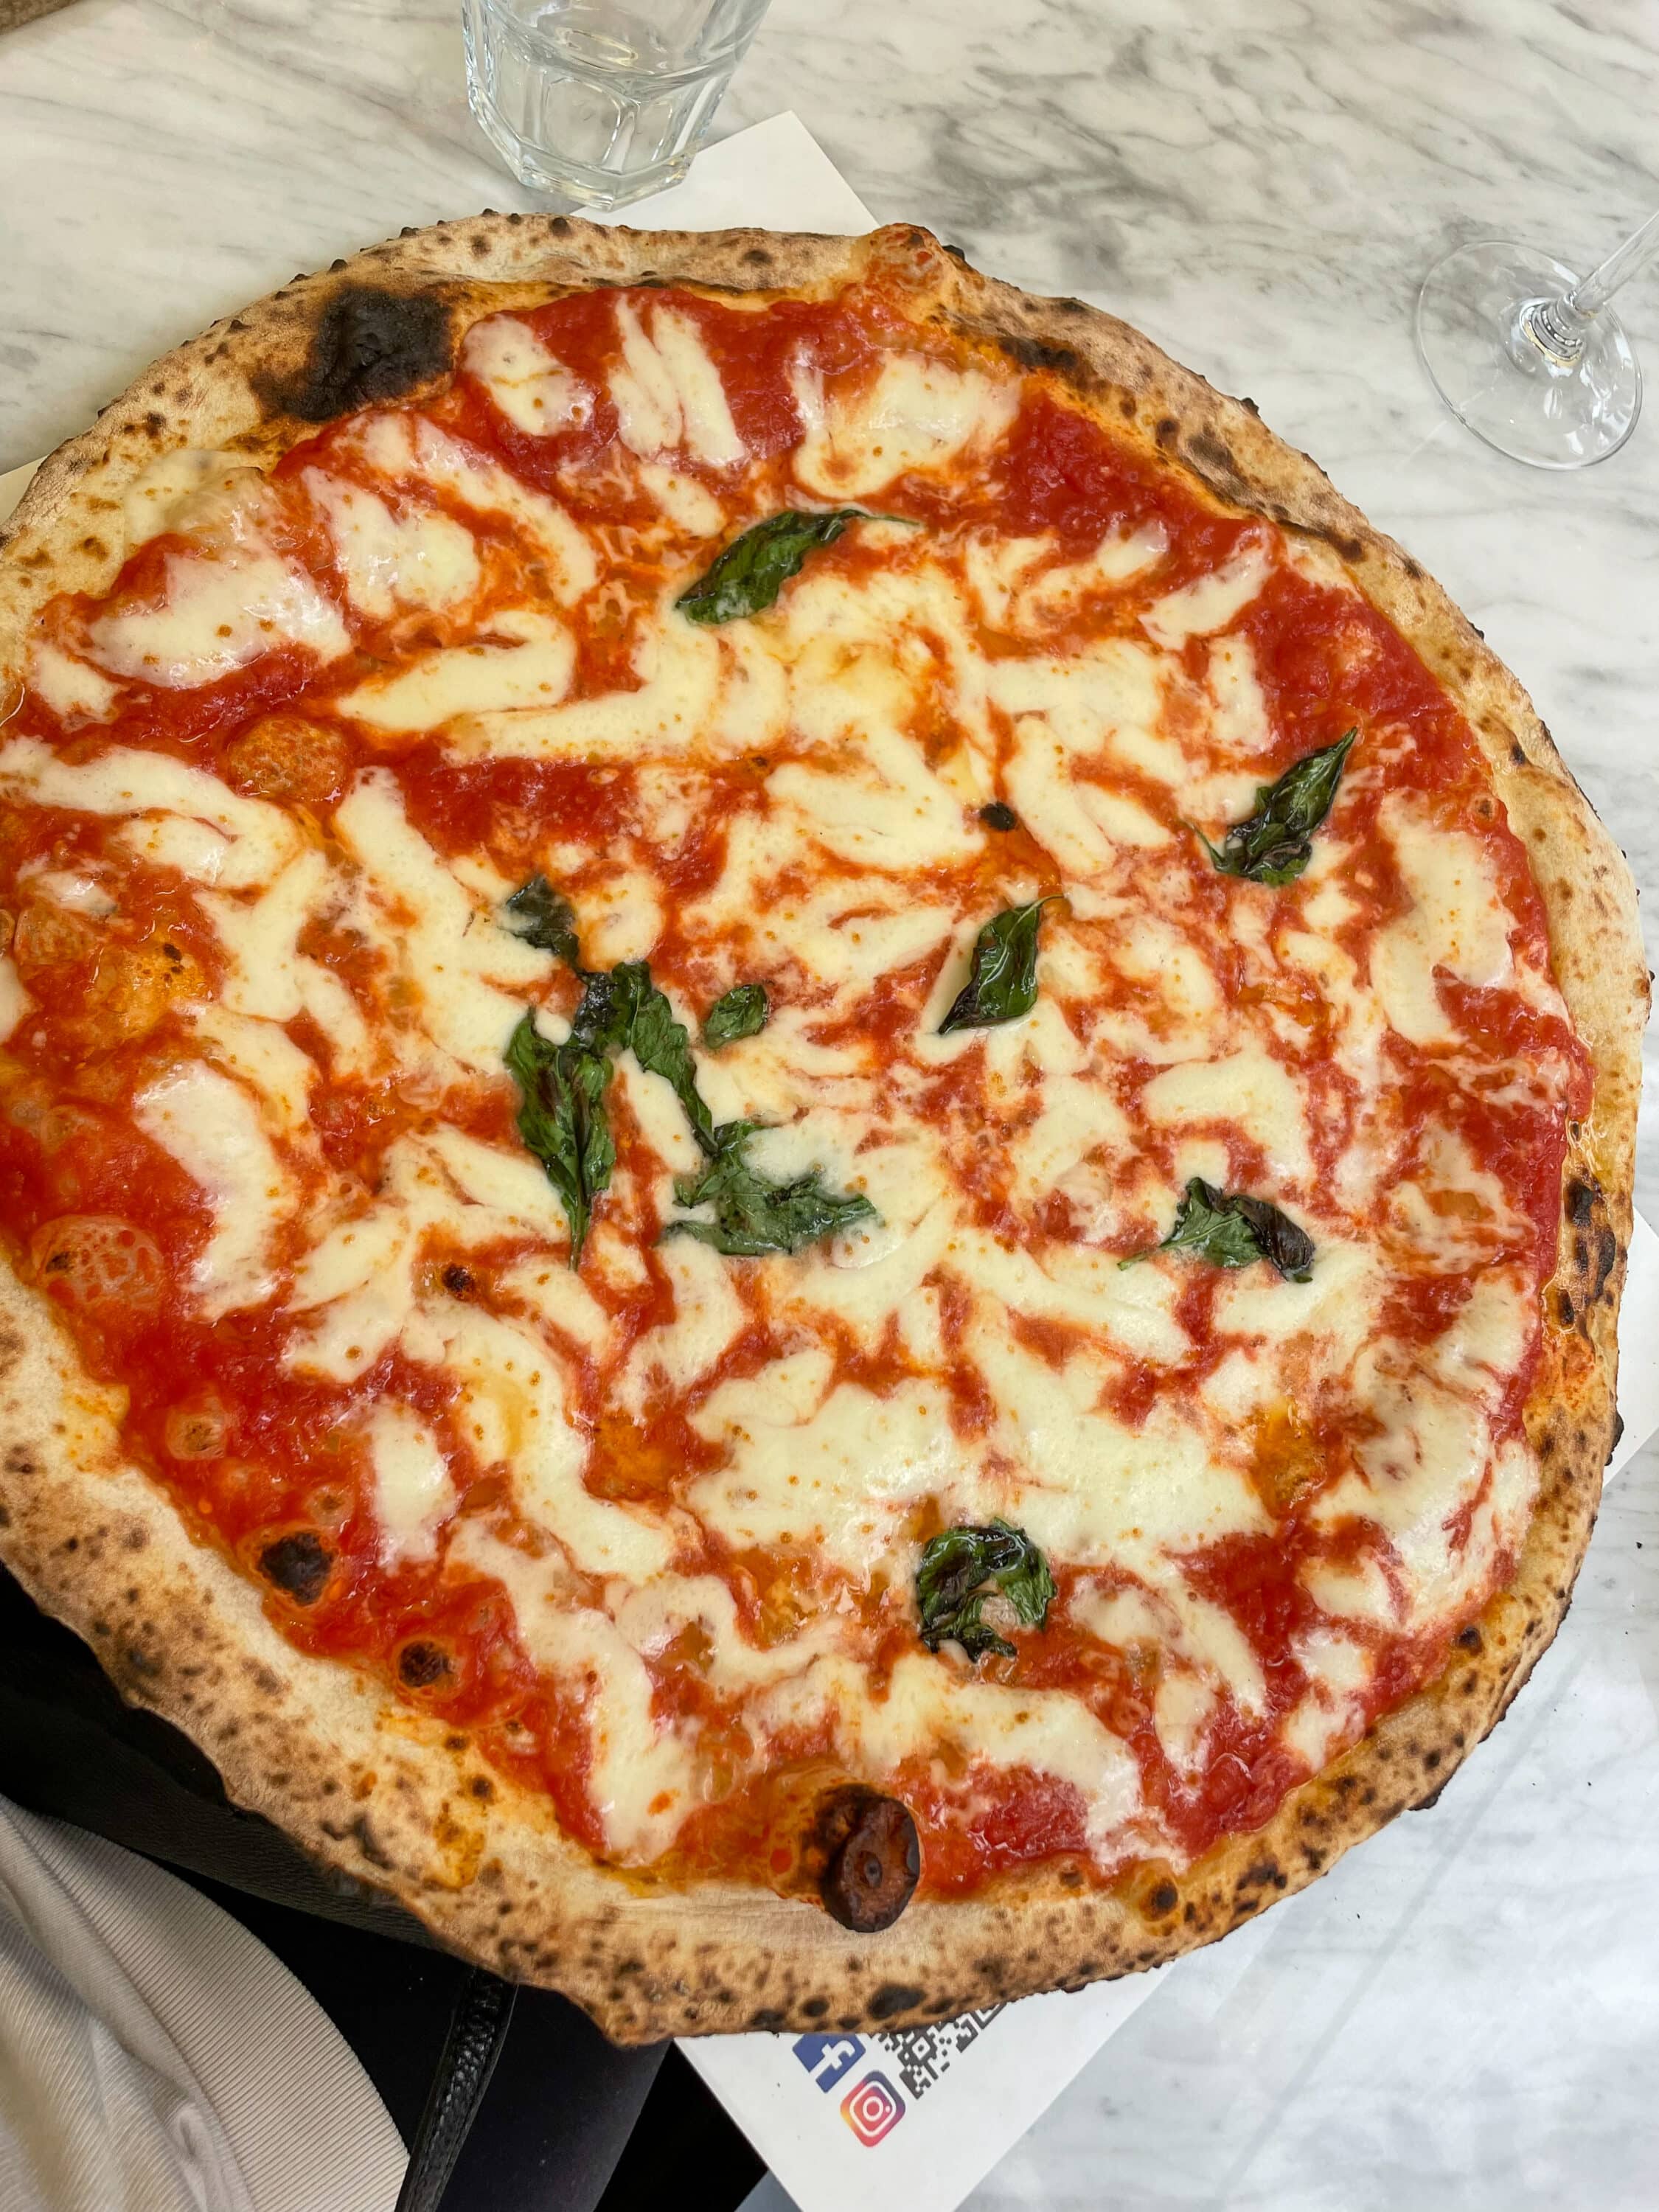 Pizza Bari